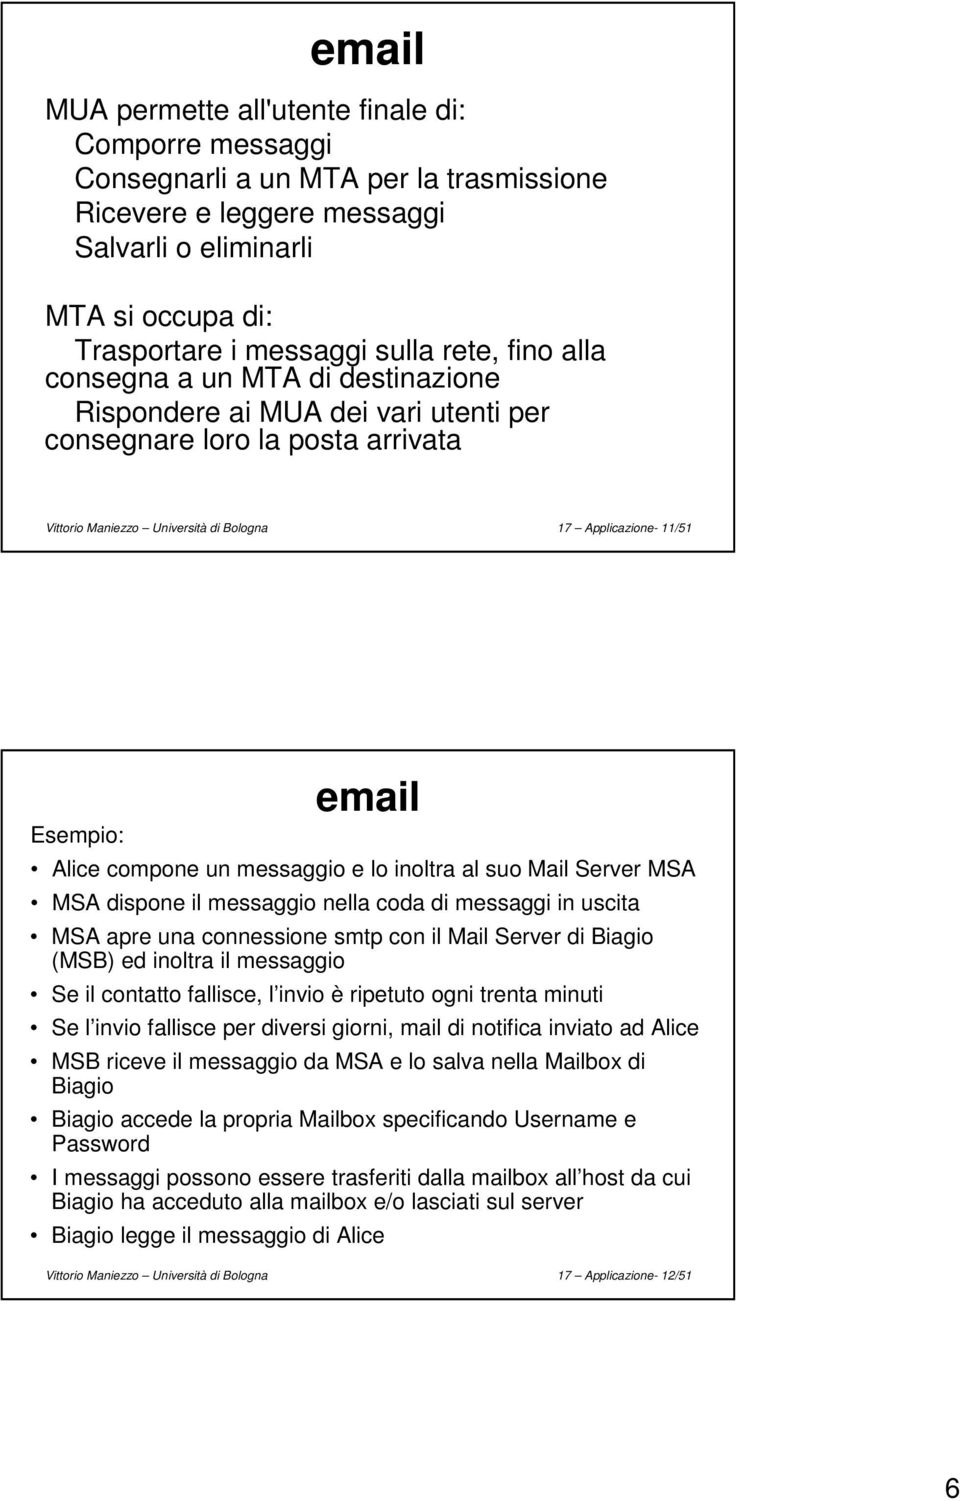 Alice compone un messaggio e lo inoltra al suo Mail Server MSA MSA dispone il messaggio nella coda di messaggi in uscita MSA apre una connessione smtp con il Mail Server di Biagio (MSB) ed inoltra il